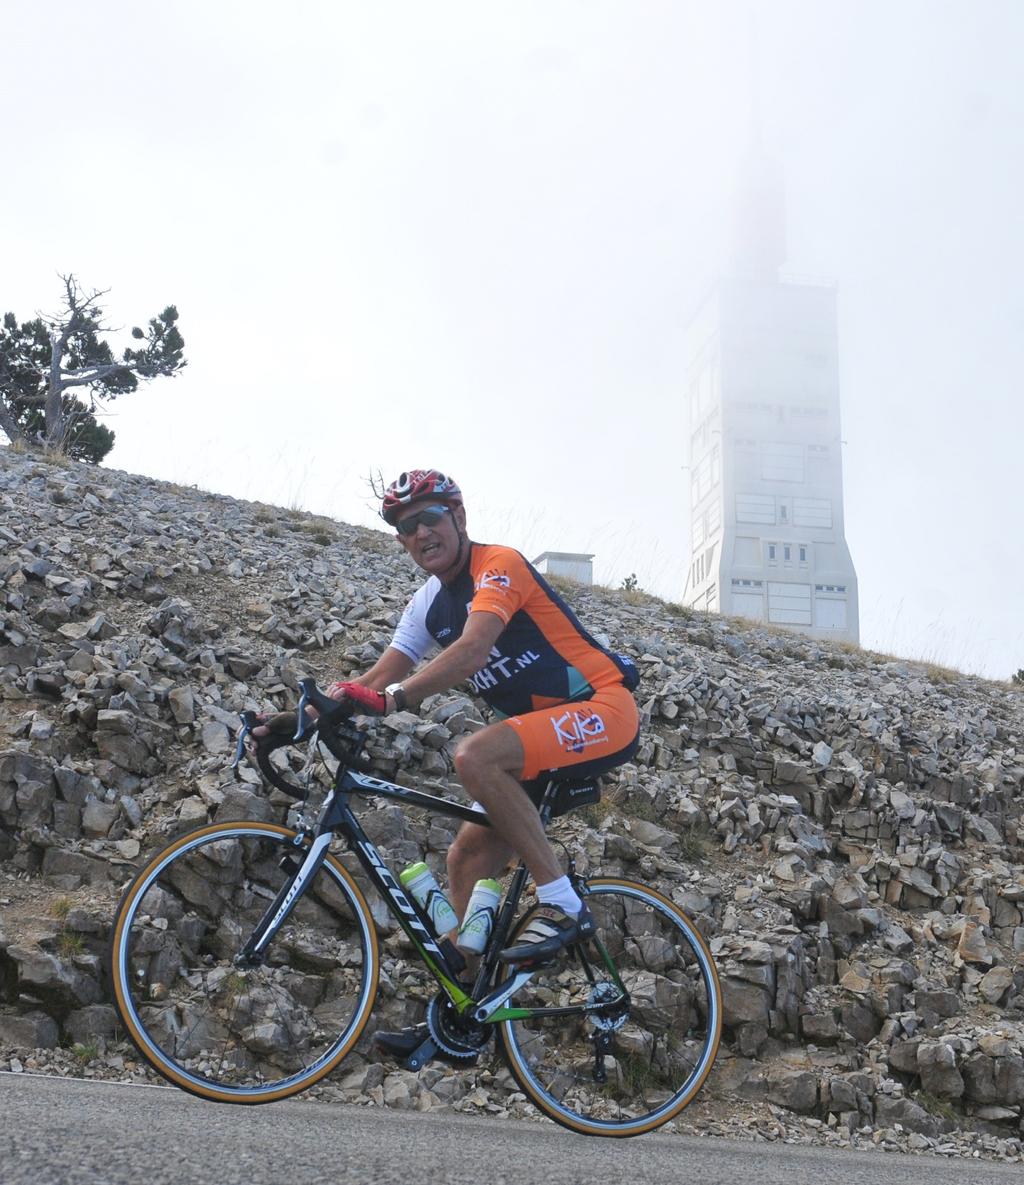 maaltijden, stijgingspercentages (tot wel 12%), pedaalslagen, de laatste bocht en de wolken rondom de toren van Mont Ventoux. Dat is wat passie doet met een mens.